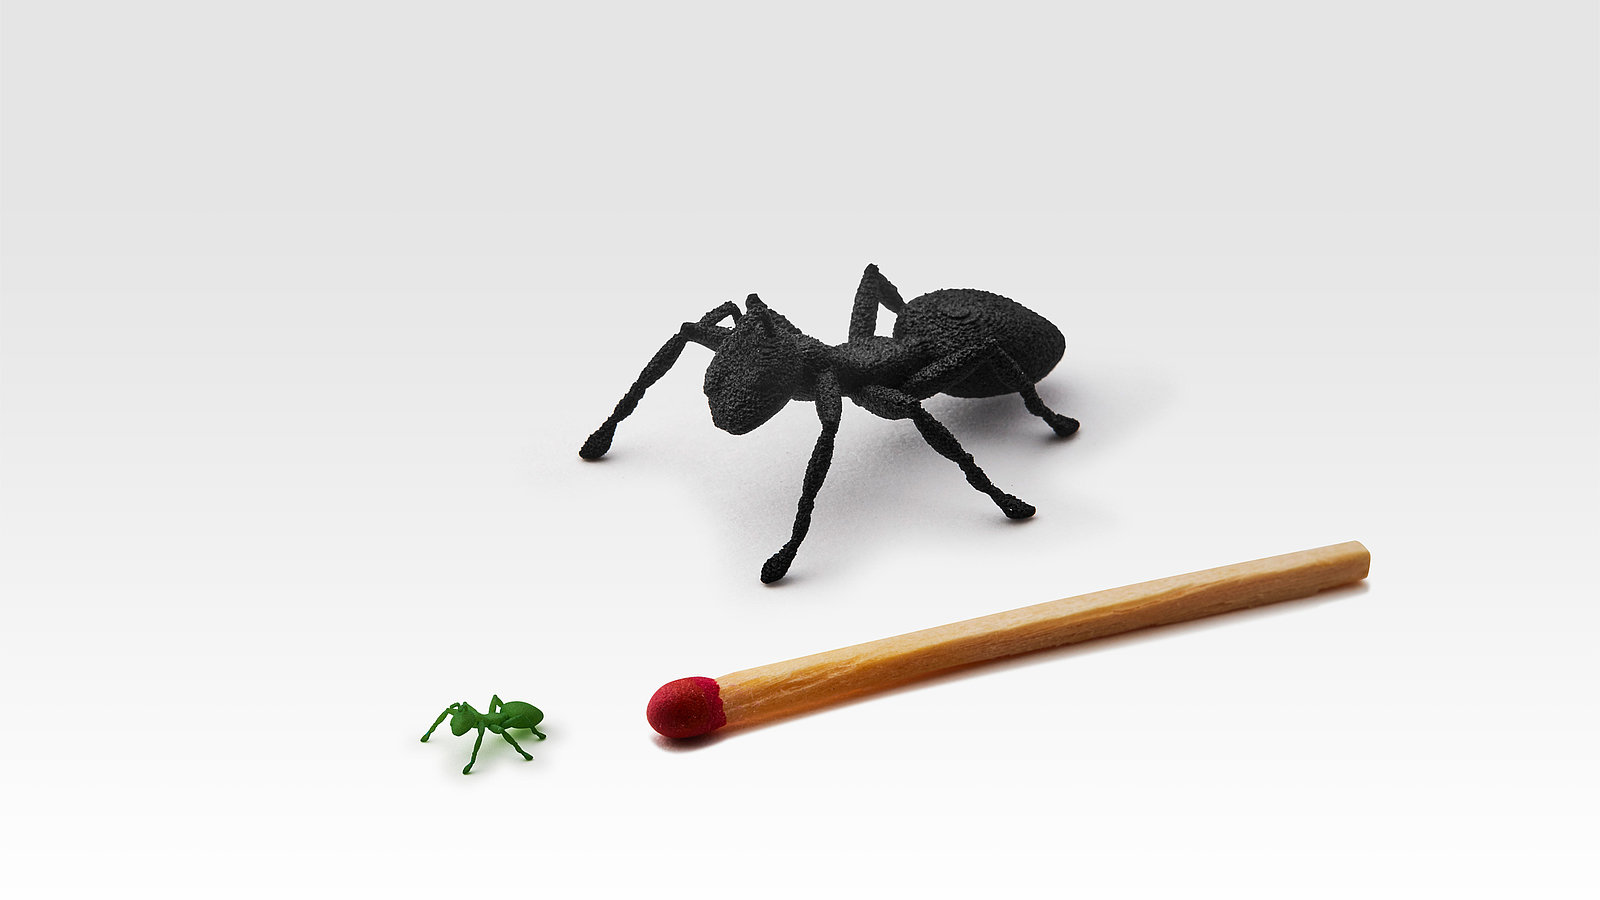 Das Bild zeigt eine große lasergesinterte Ameise in schwarz, sowie eine kleine grüne lasergesinterte Ameise in der Größe eines Kopfes eines Streichholzes, welche die Möglichkeiten der neuen FDR Technologie verdeutlichen soll.